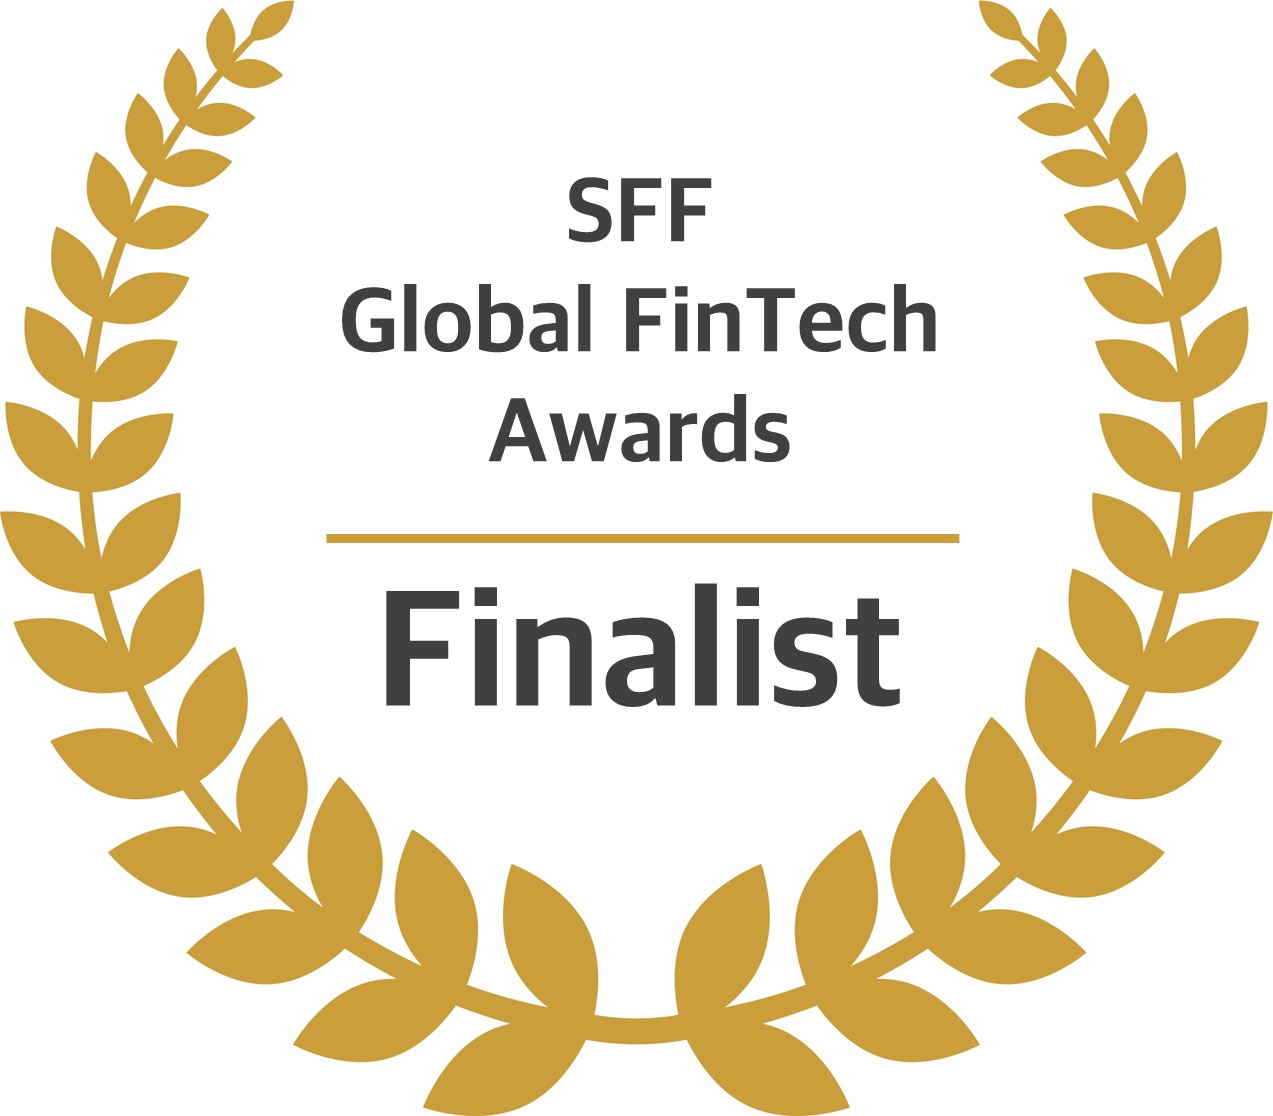 SFF Global FinTech Awards finalist